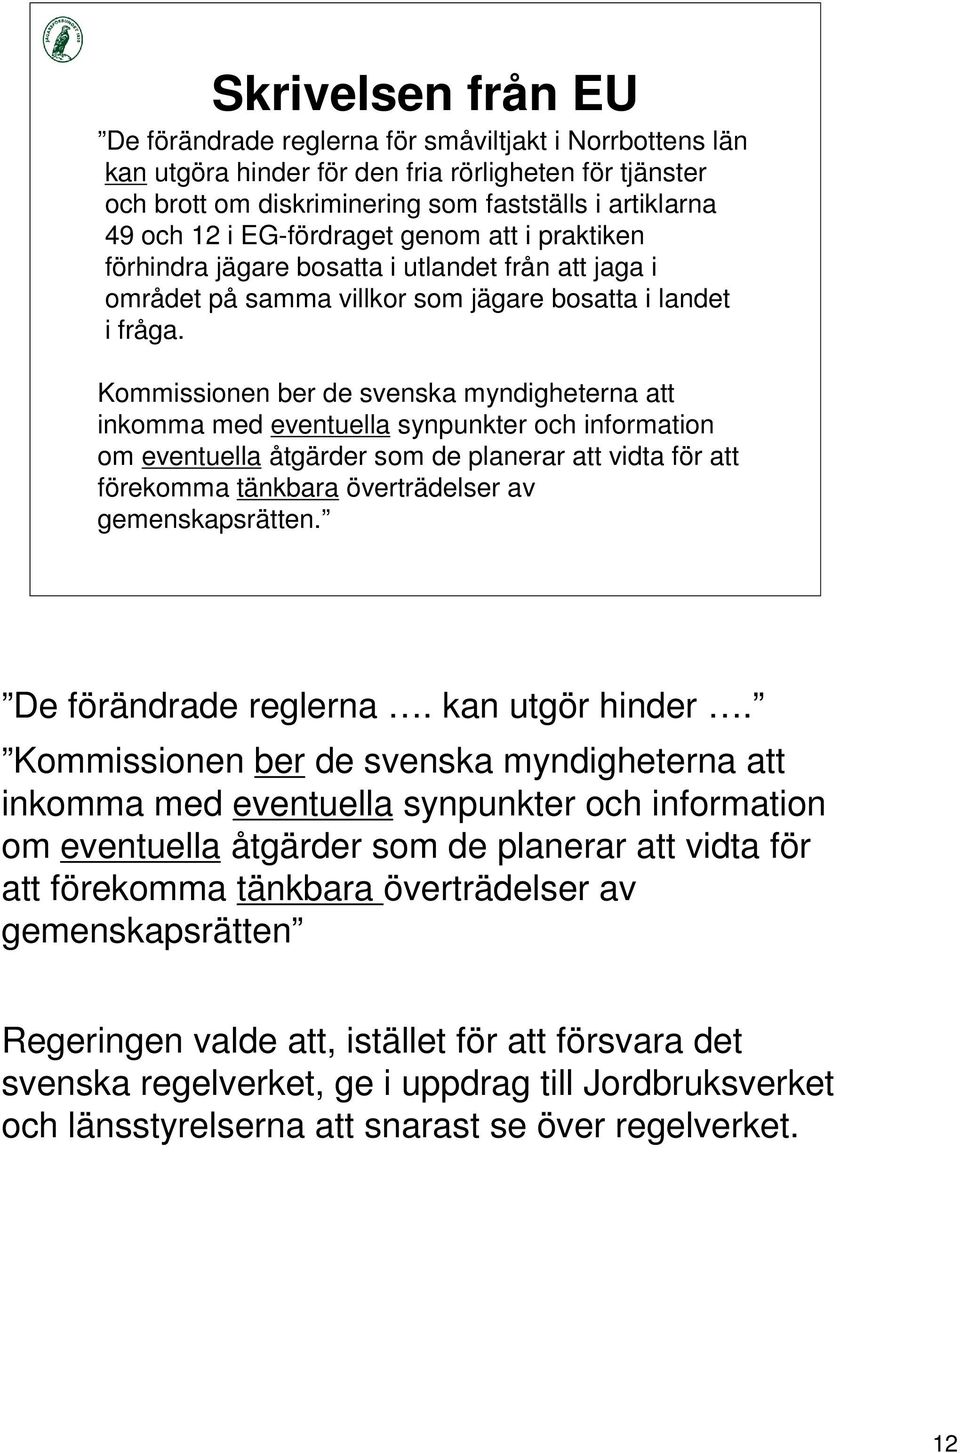 Kommissionen ber de svenska myndigheterna att inkomma med eventuella synpunkter och information om eventuella åtgärder som de planerar att vidta för att förekomma tänkbara överträdelser av